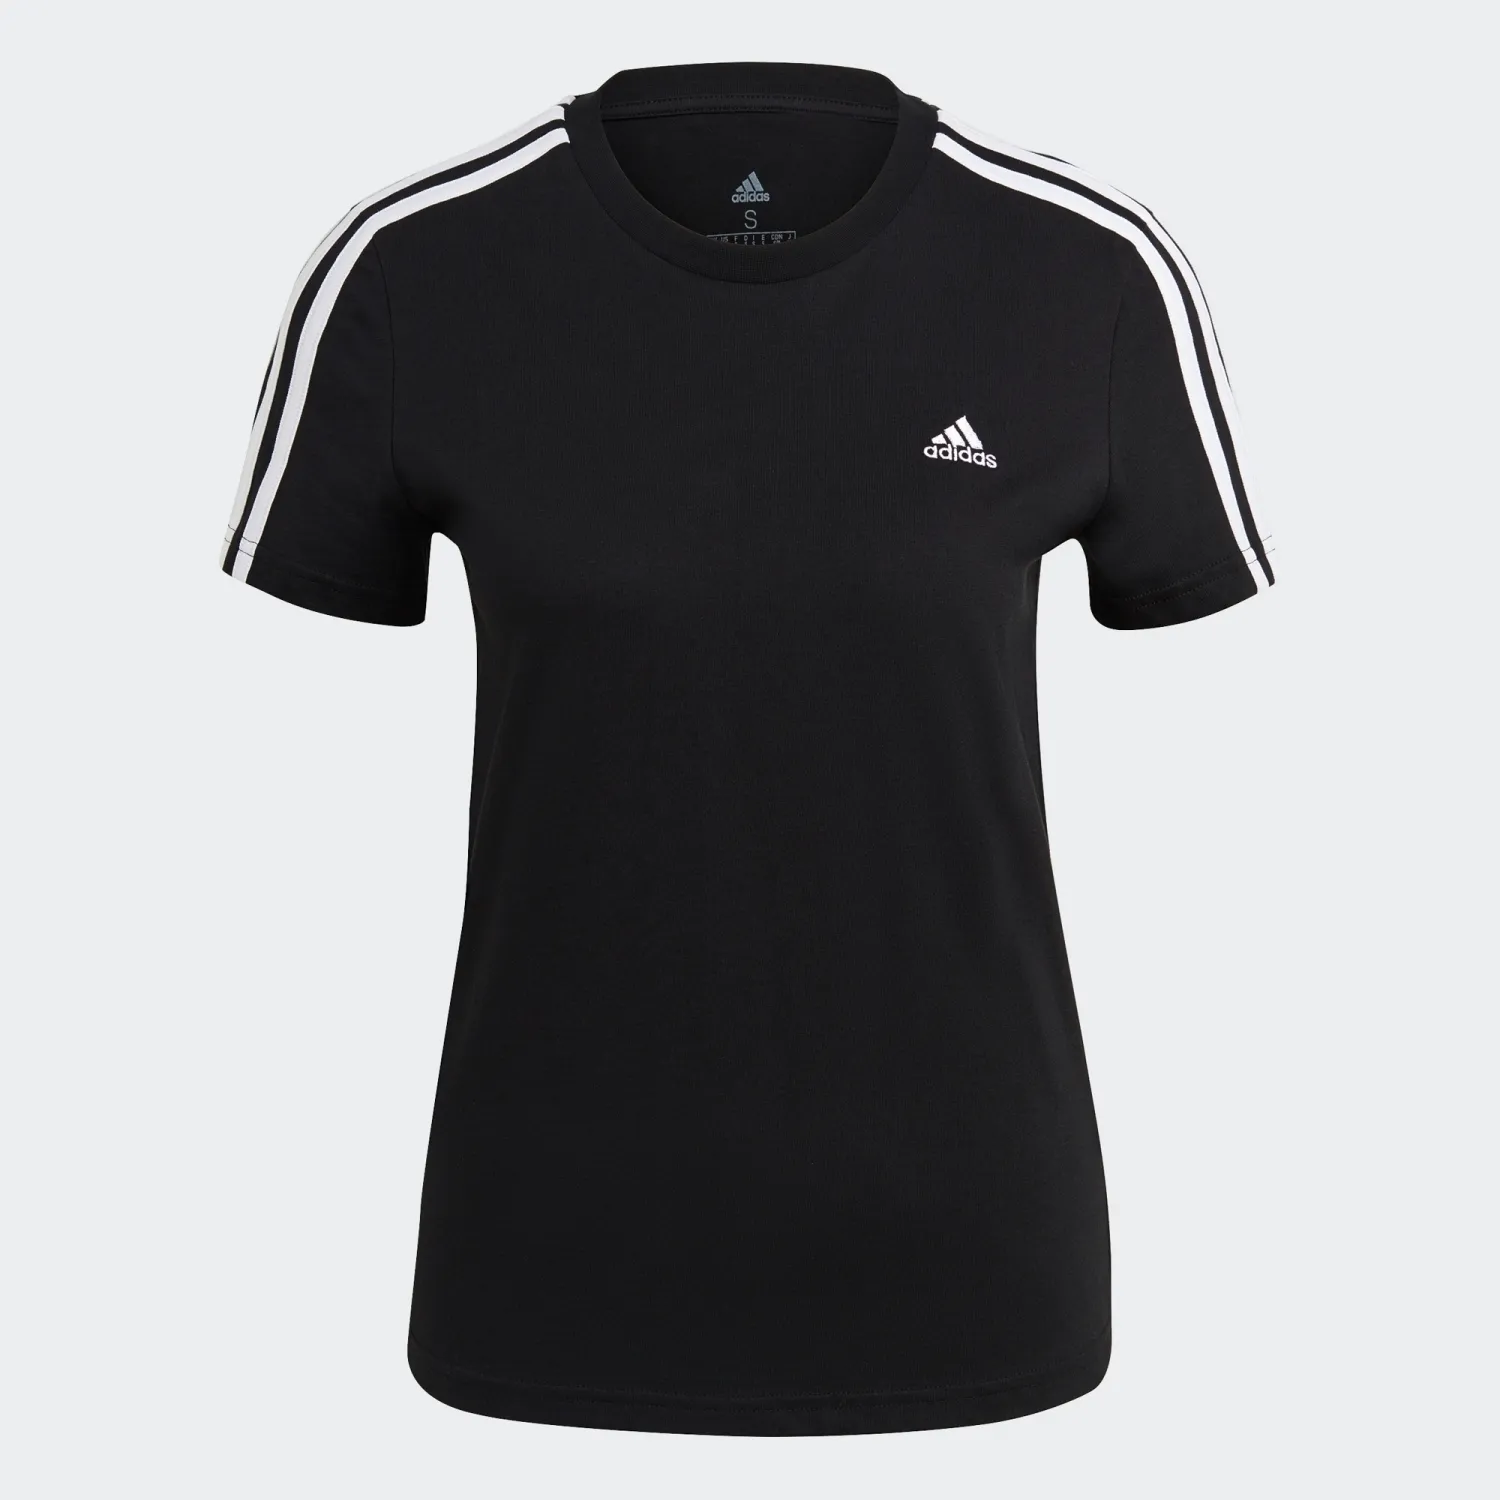 adidas LOUNGEWEAR Essentials Slim 3-Streifen T-Shirt Damen schwarz/weiß - M